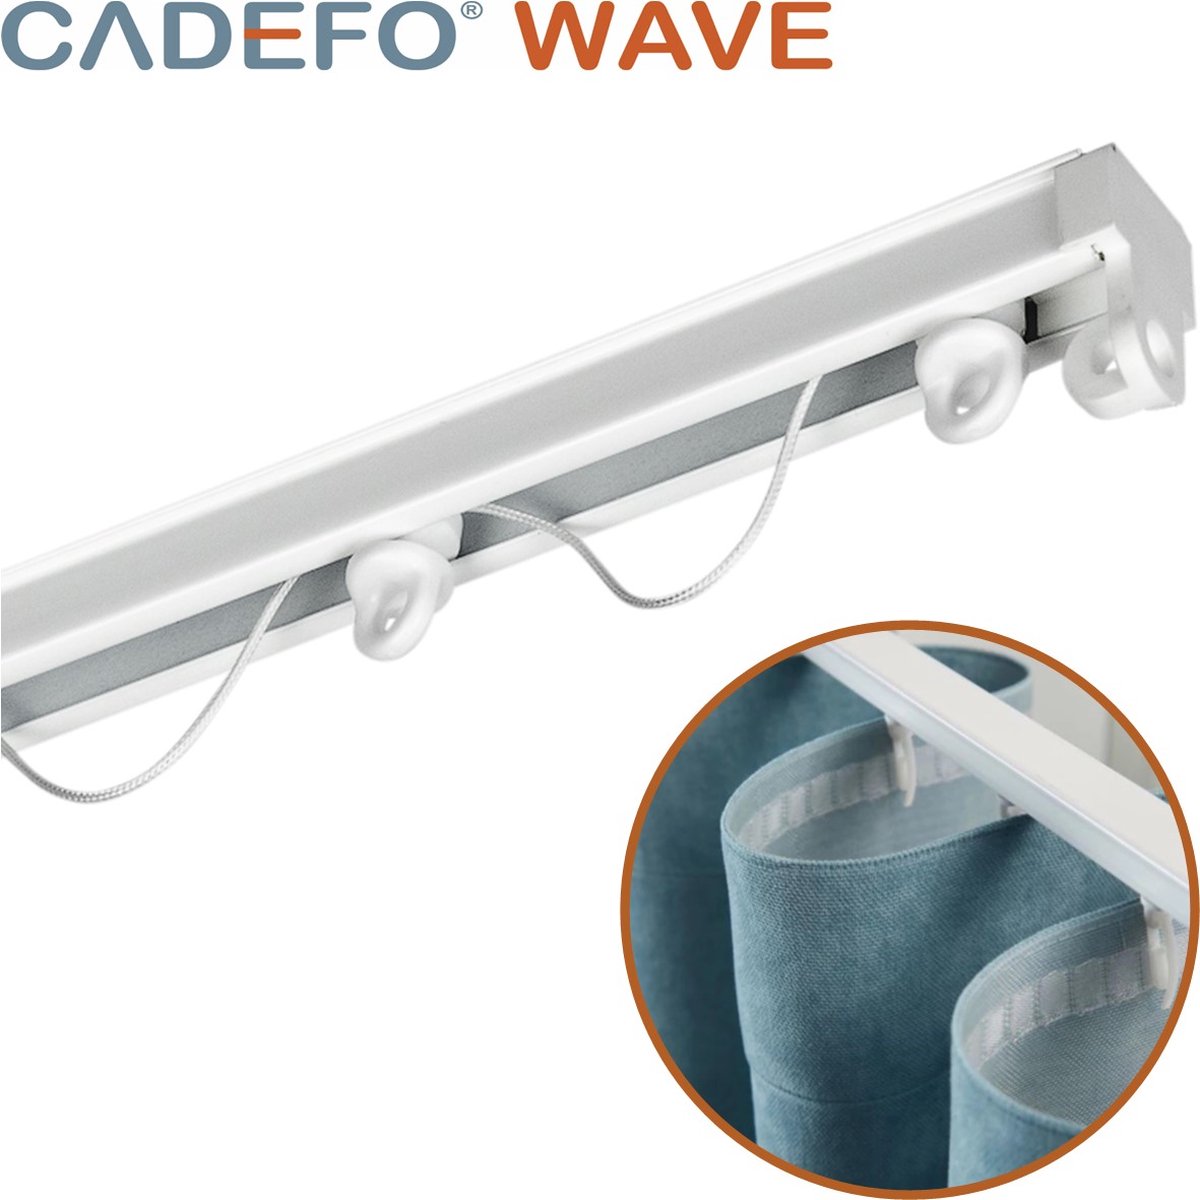 CADEFO WAVE (351 - 400 cm) Gordijnrails - Compleet op maat! - UIT 1 STUK - Leverbaar tot 6 meter - Plafondbevestiging - Lengte 353 cm